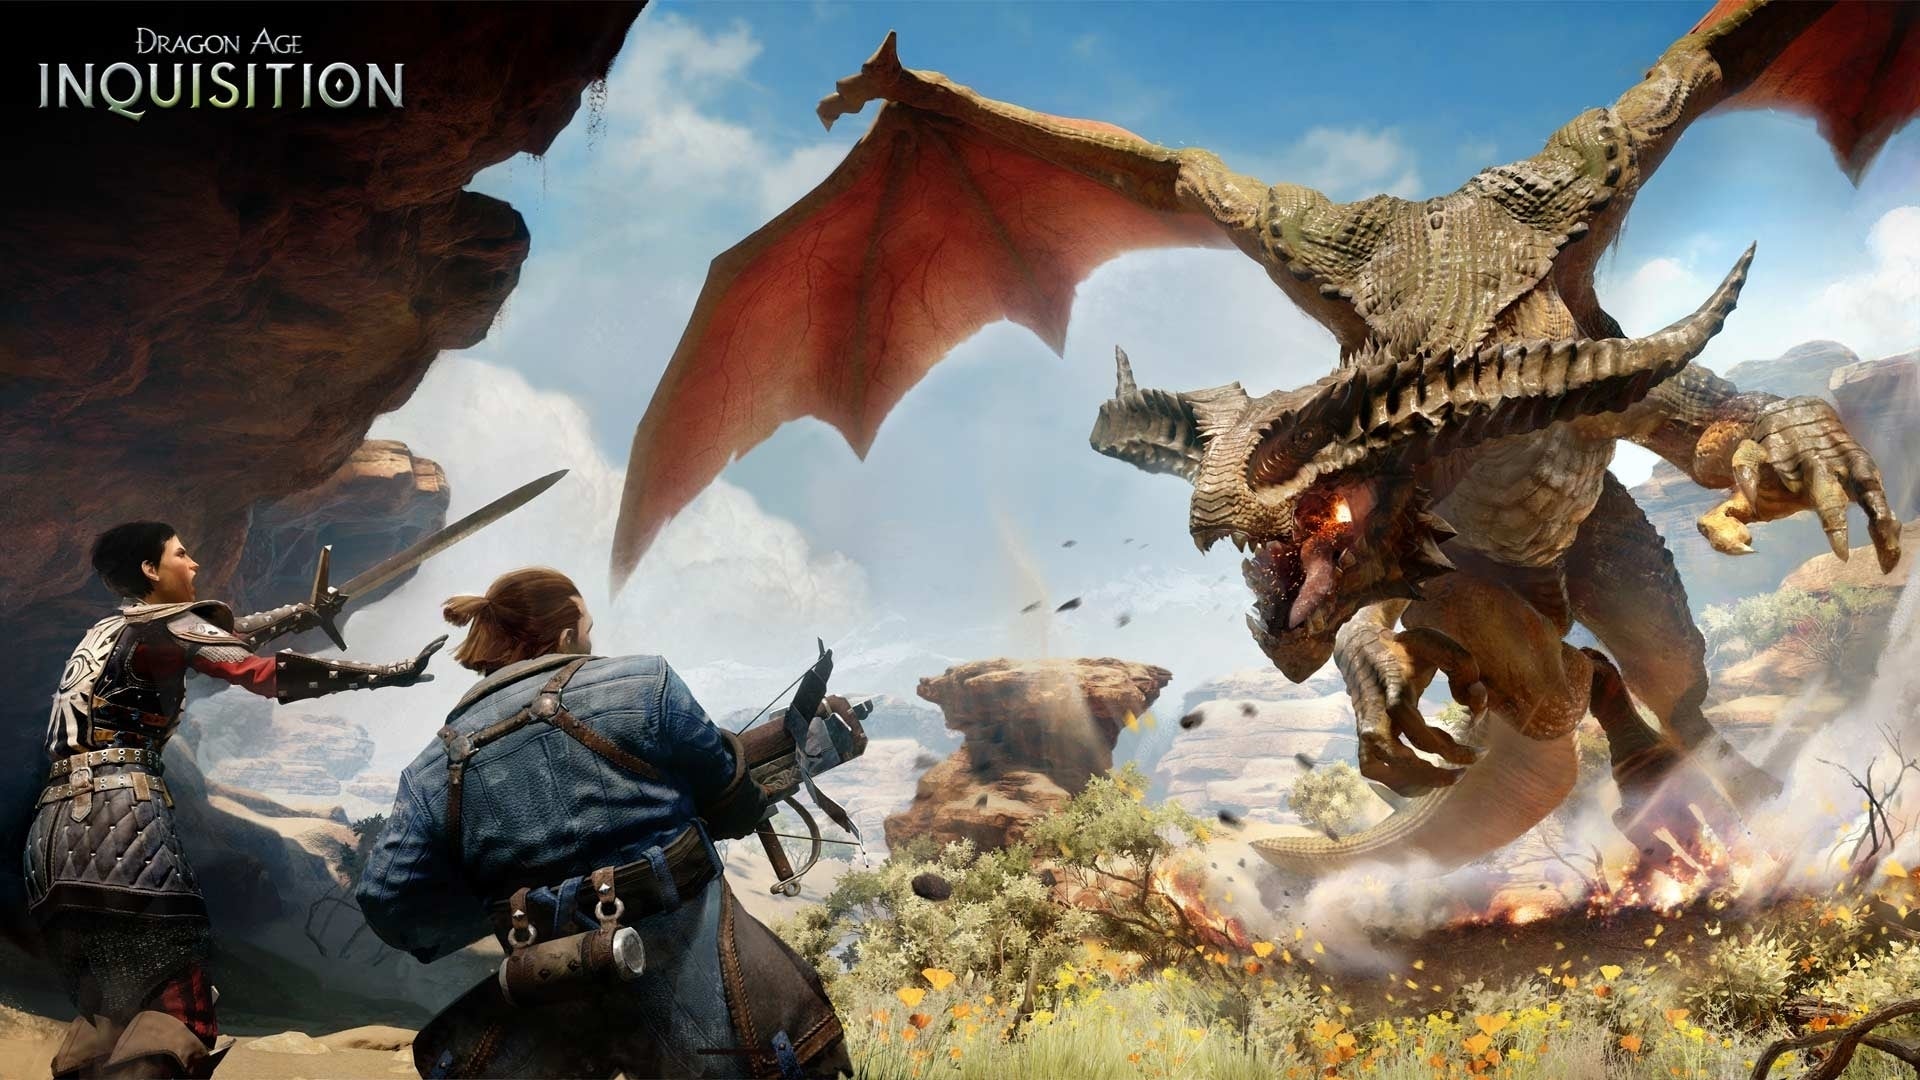 Dragon Age Inquisition Destruction Multiplayer DLC Introduces